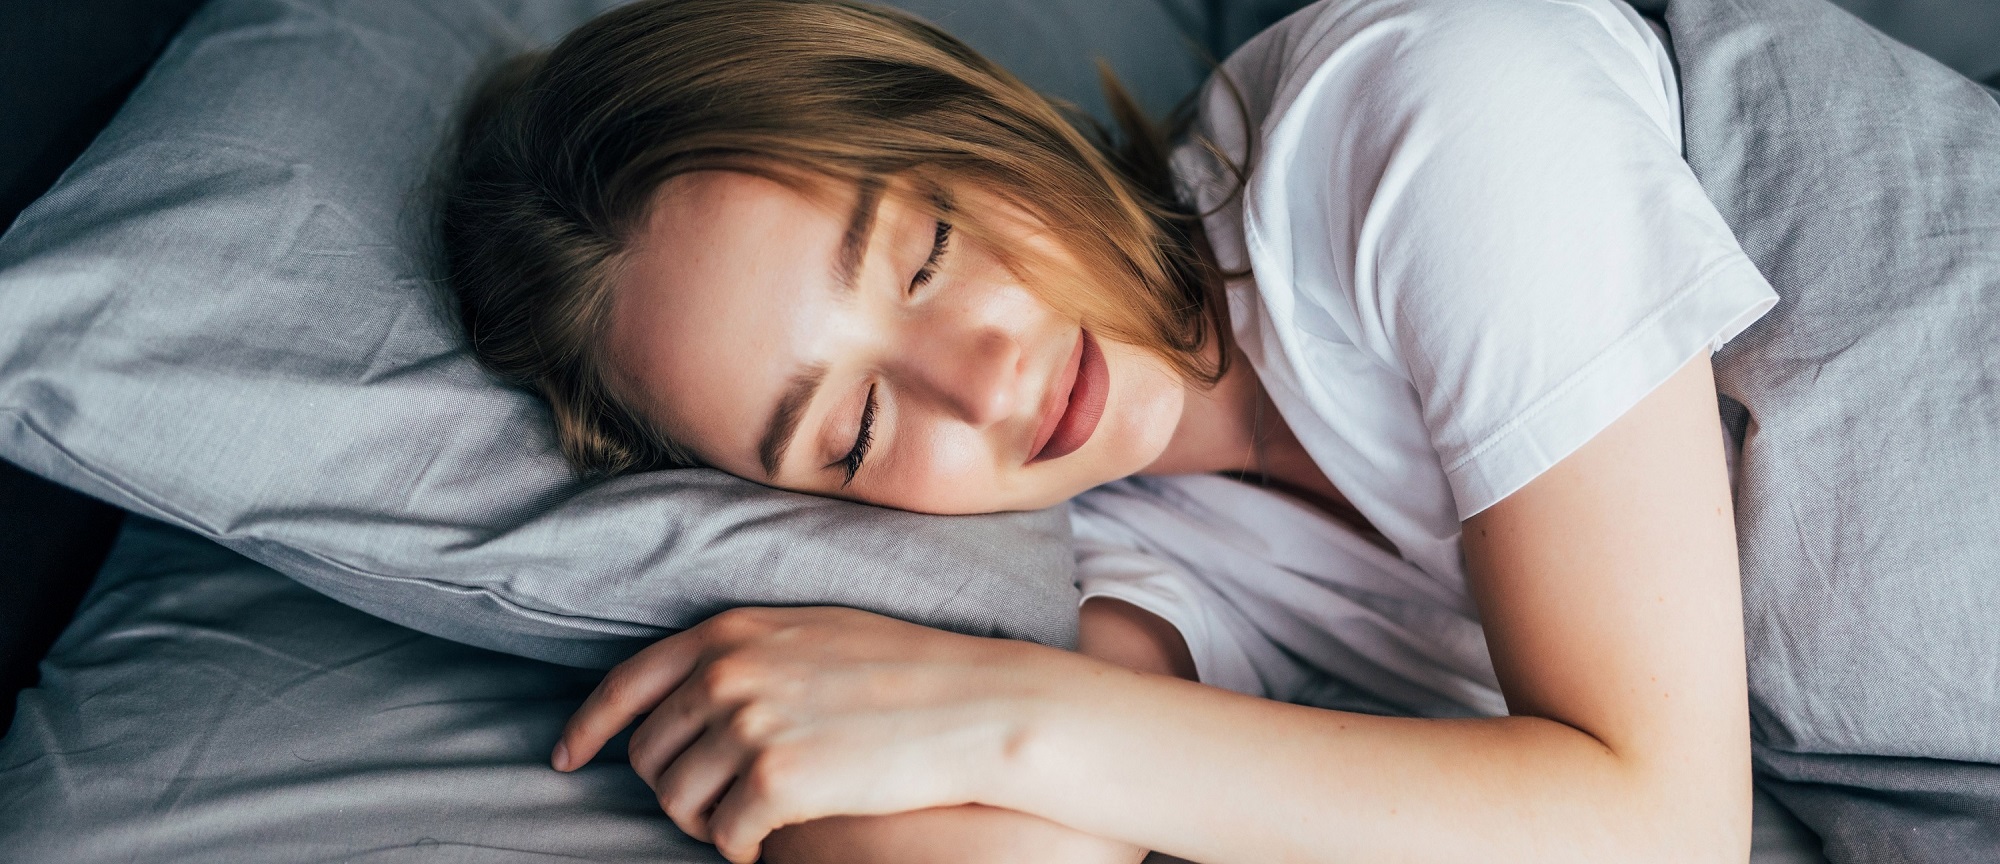 evers gluecklich und produktiv durch gesunden schlaf